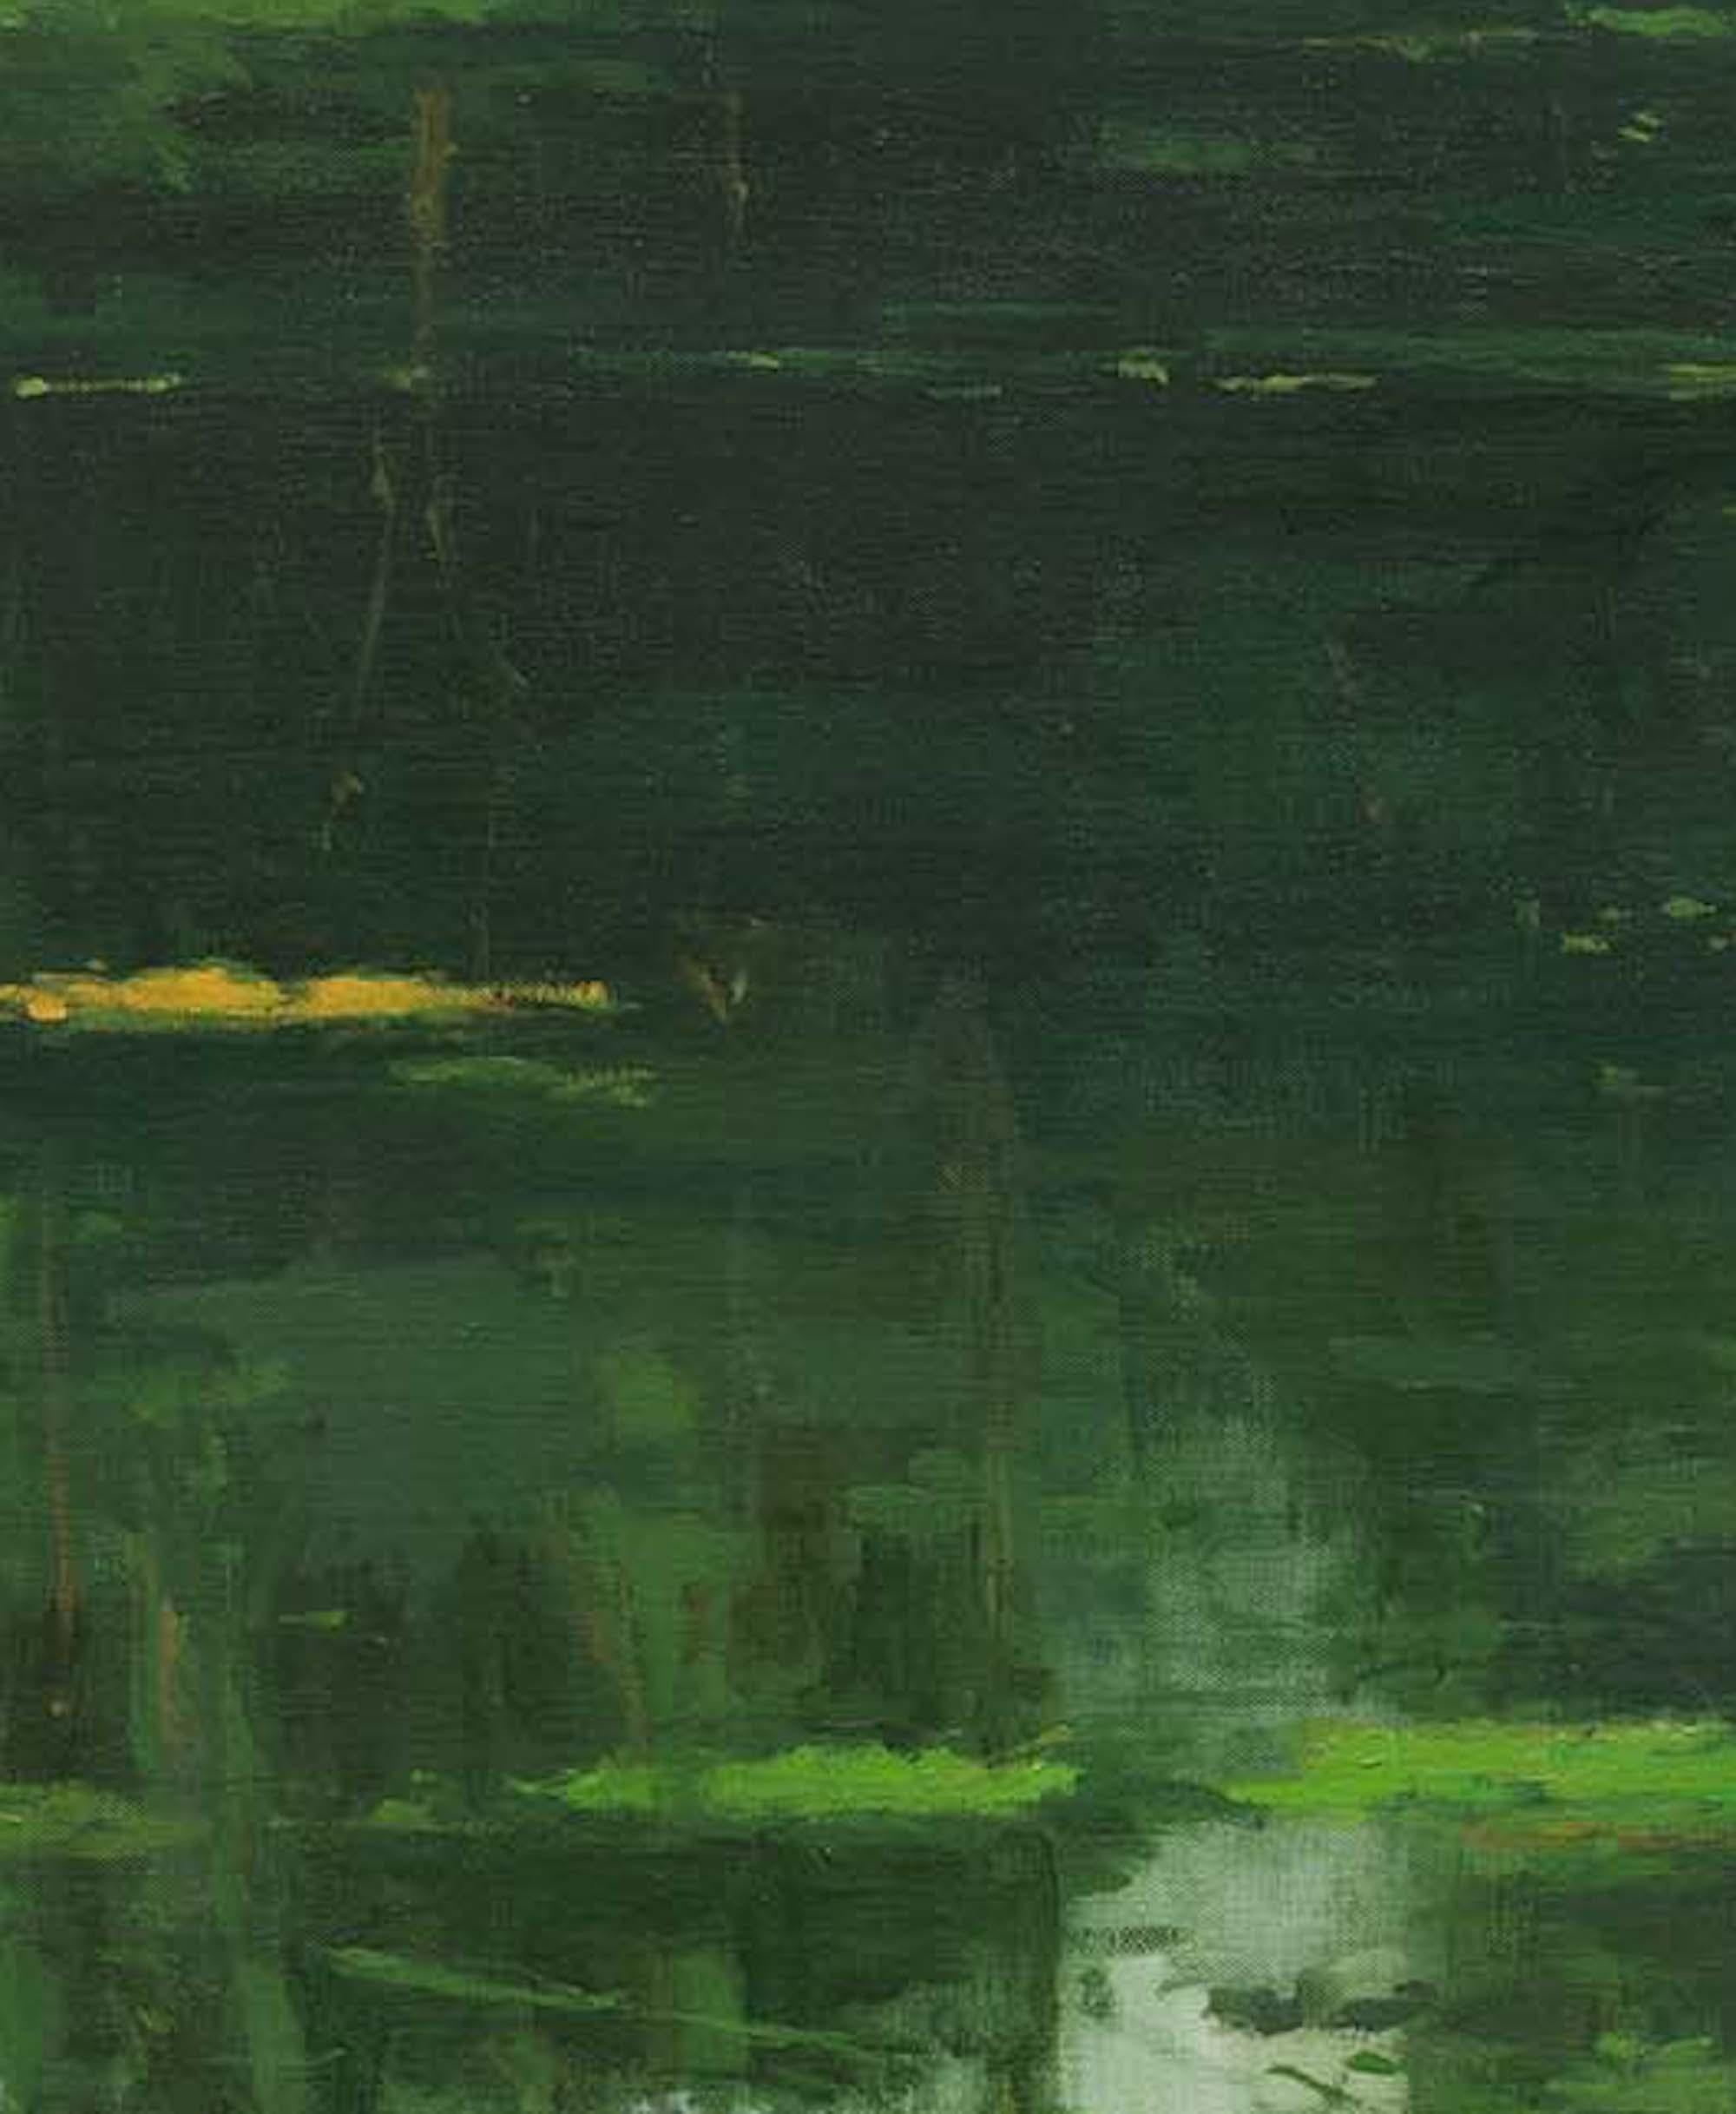 Reflection No. 5 by Calo Carratalá - Landscape painting, green Amazon rainforest For Sale 4